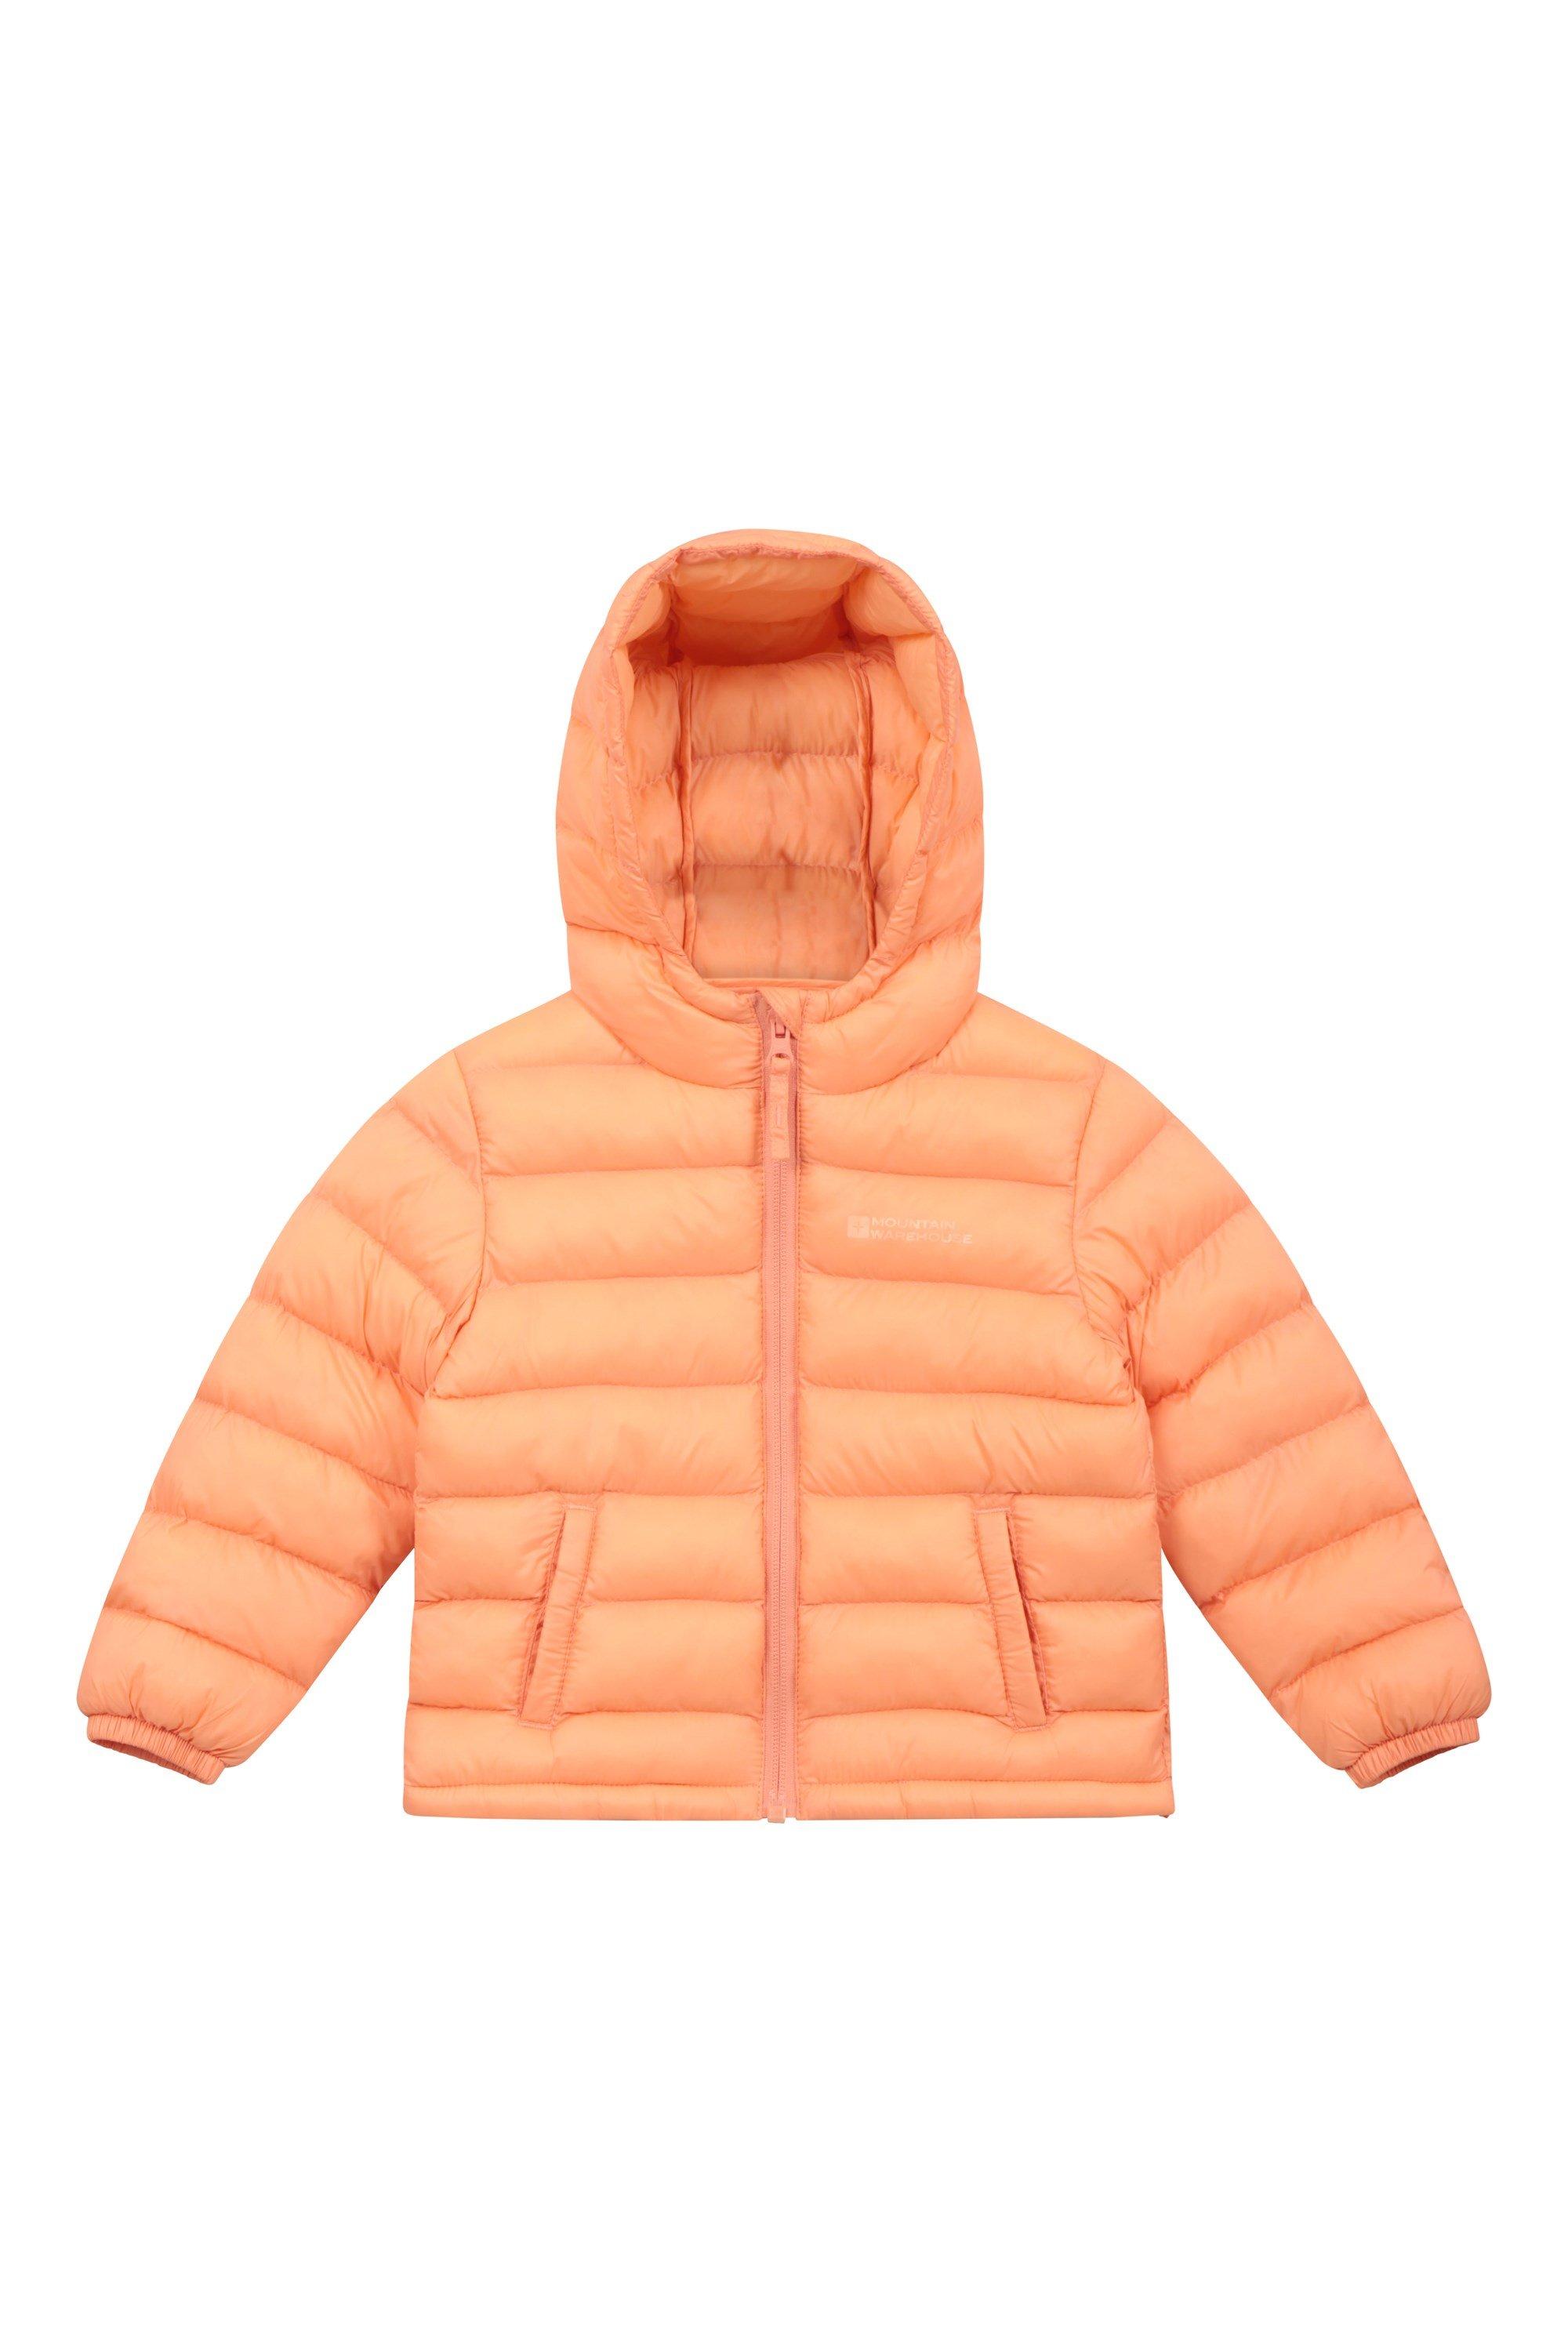 Стеганая куртка Baby Seasons, водонепроницаемое пальто с пуховым капюшоном Mountain Warehouse, оранжевый